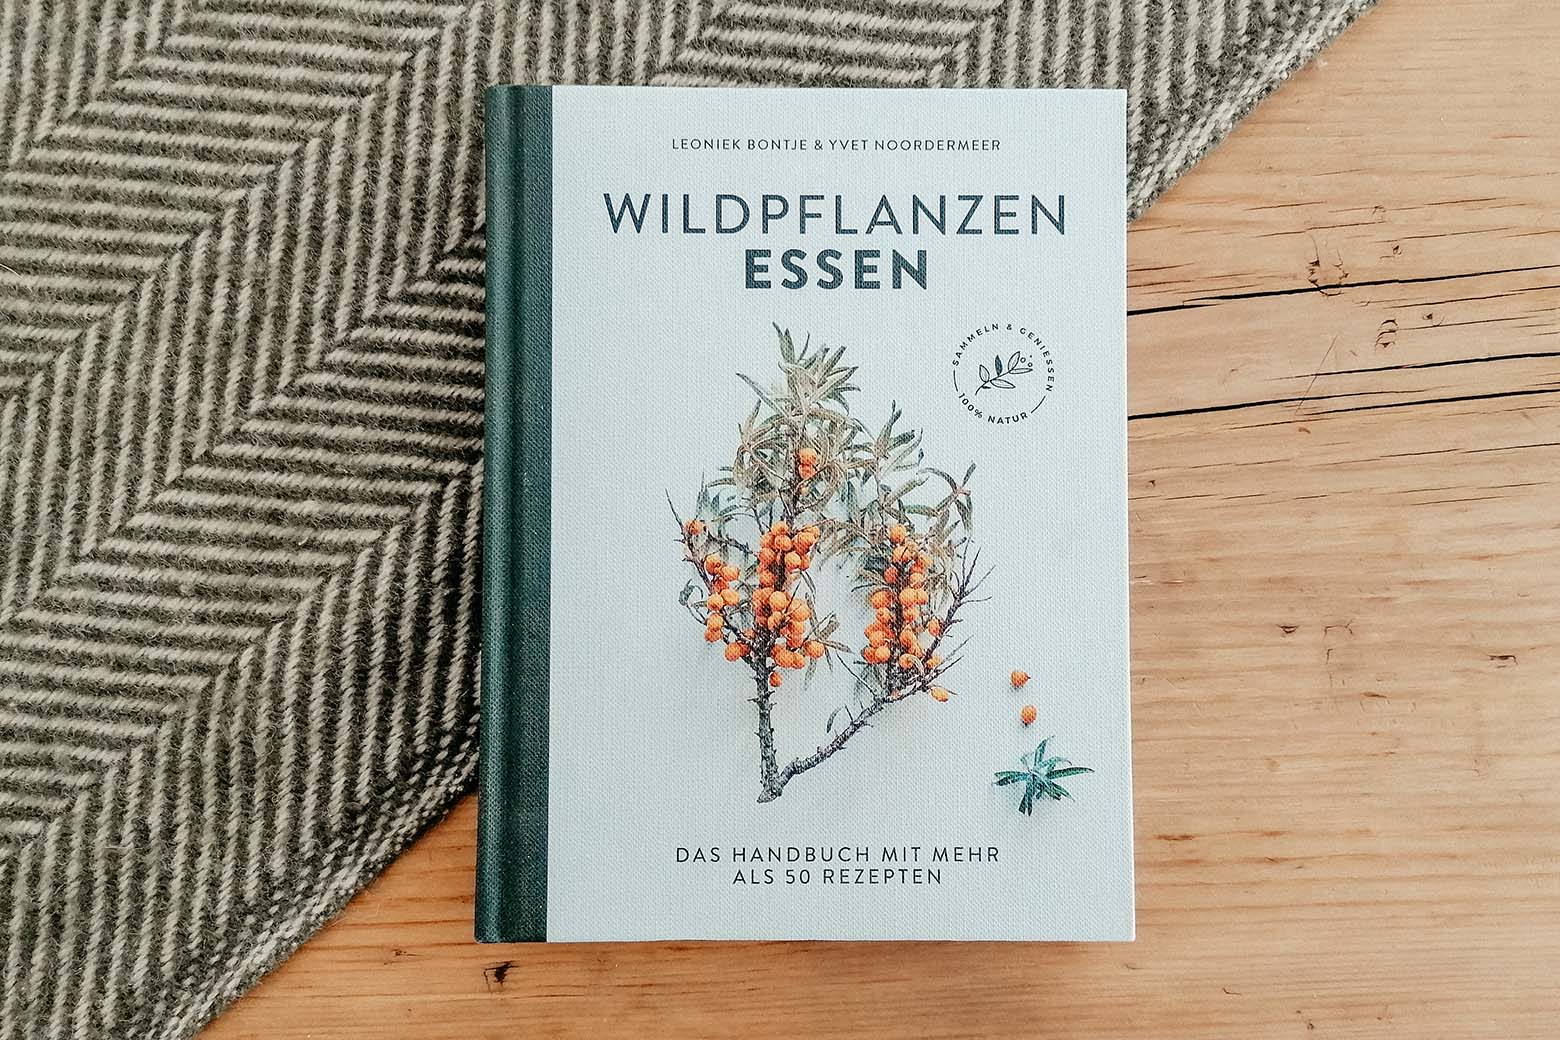  Leoniek Bontje, Yvet Noordermeer: Wildpflanzen essen